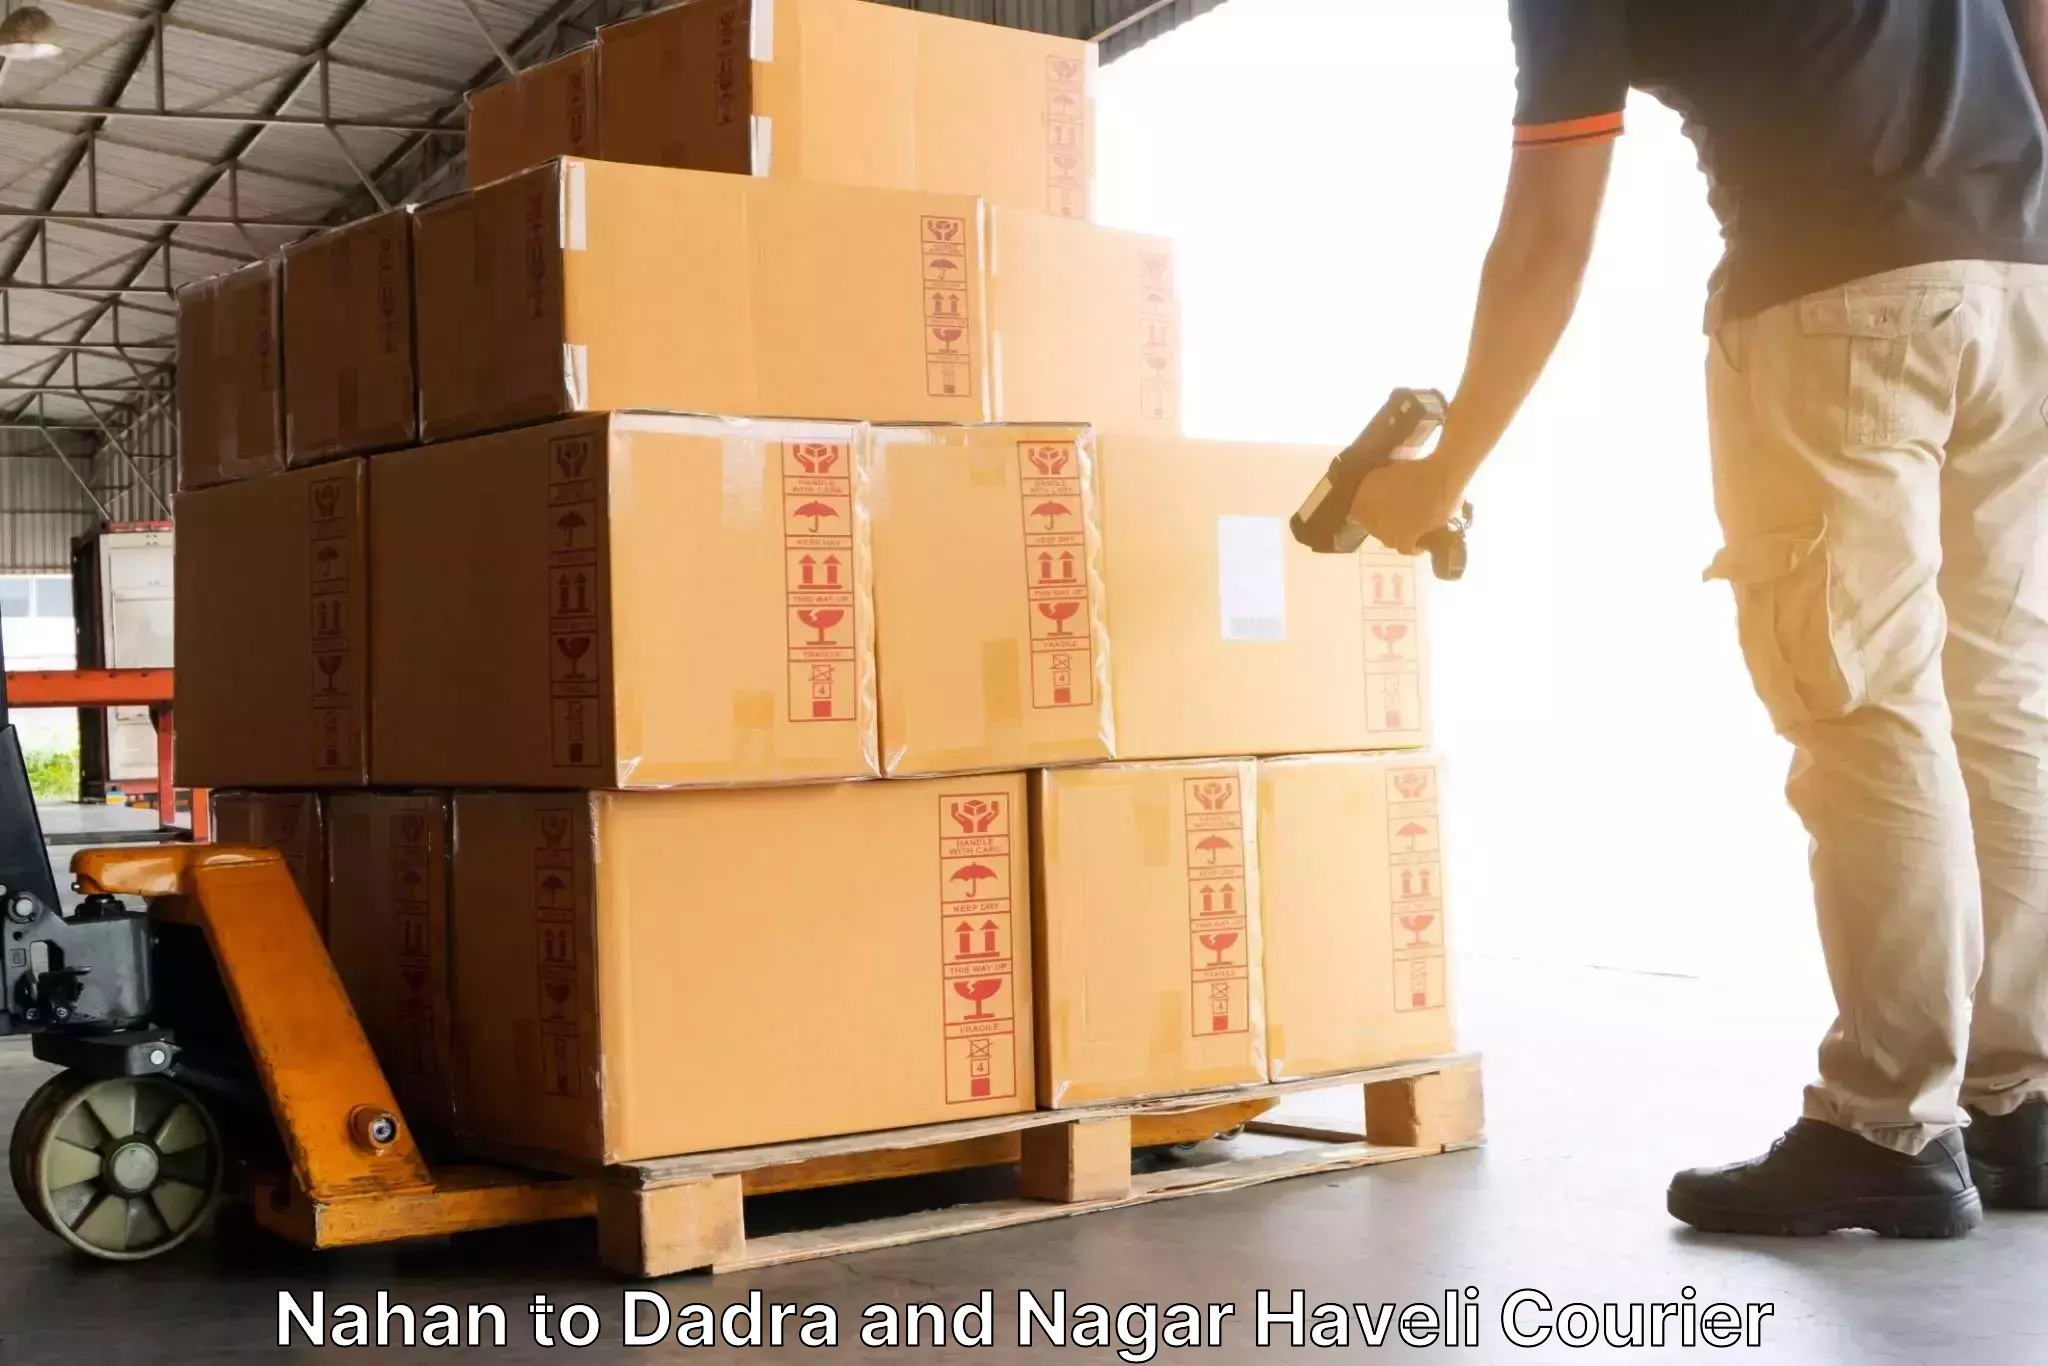 Express logistics service Nahan to Dadra and Nagar Haveli